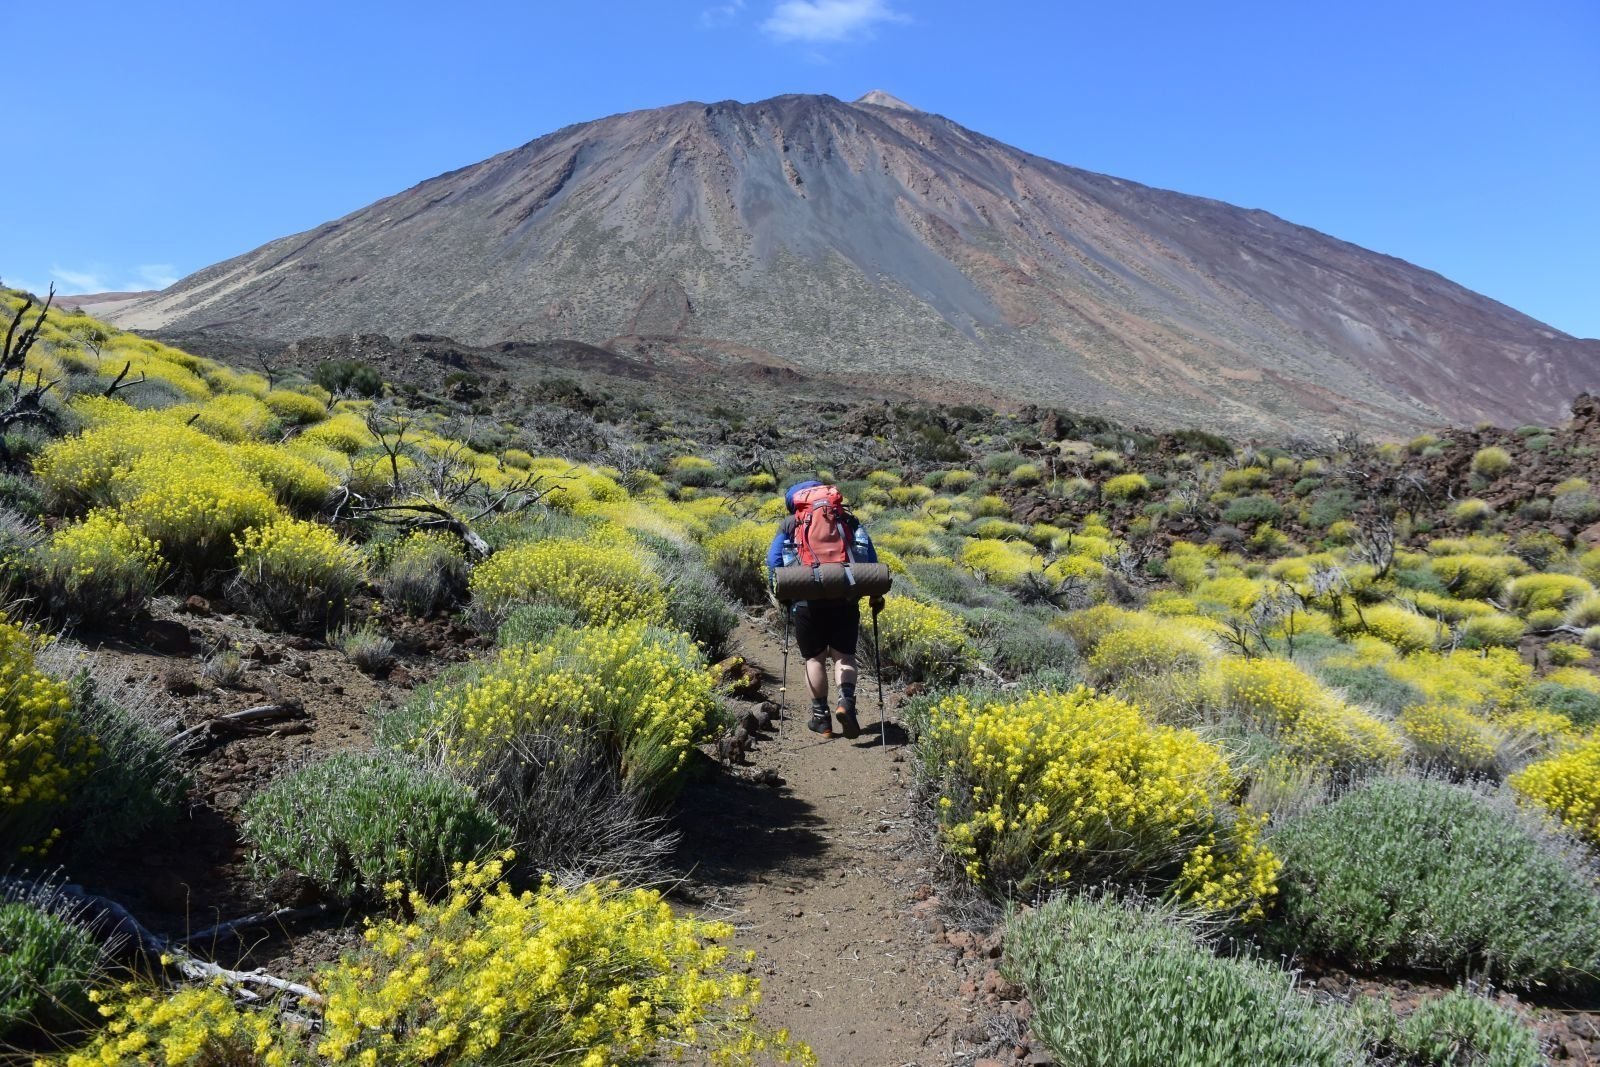 Hiking by Tenerife volcanoes